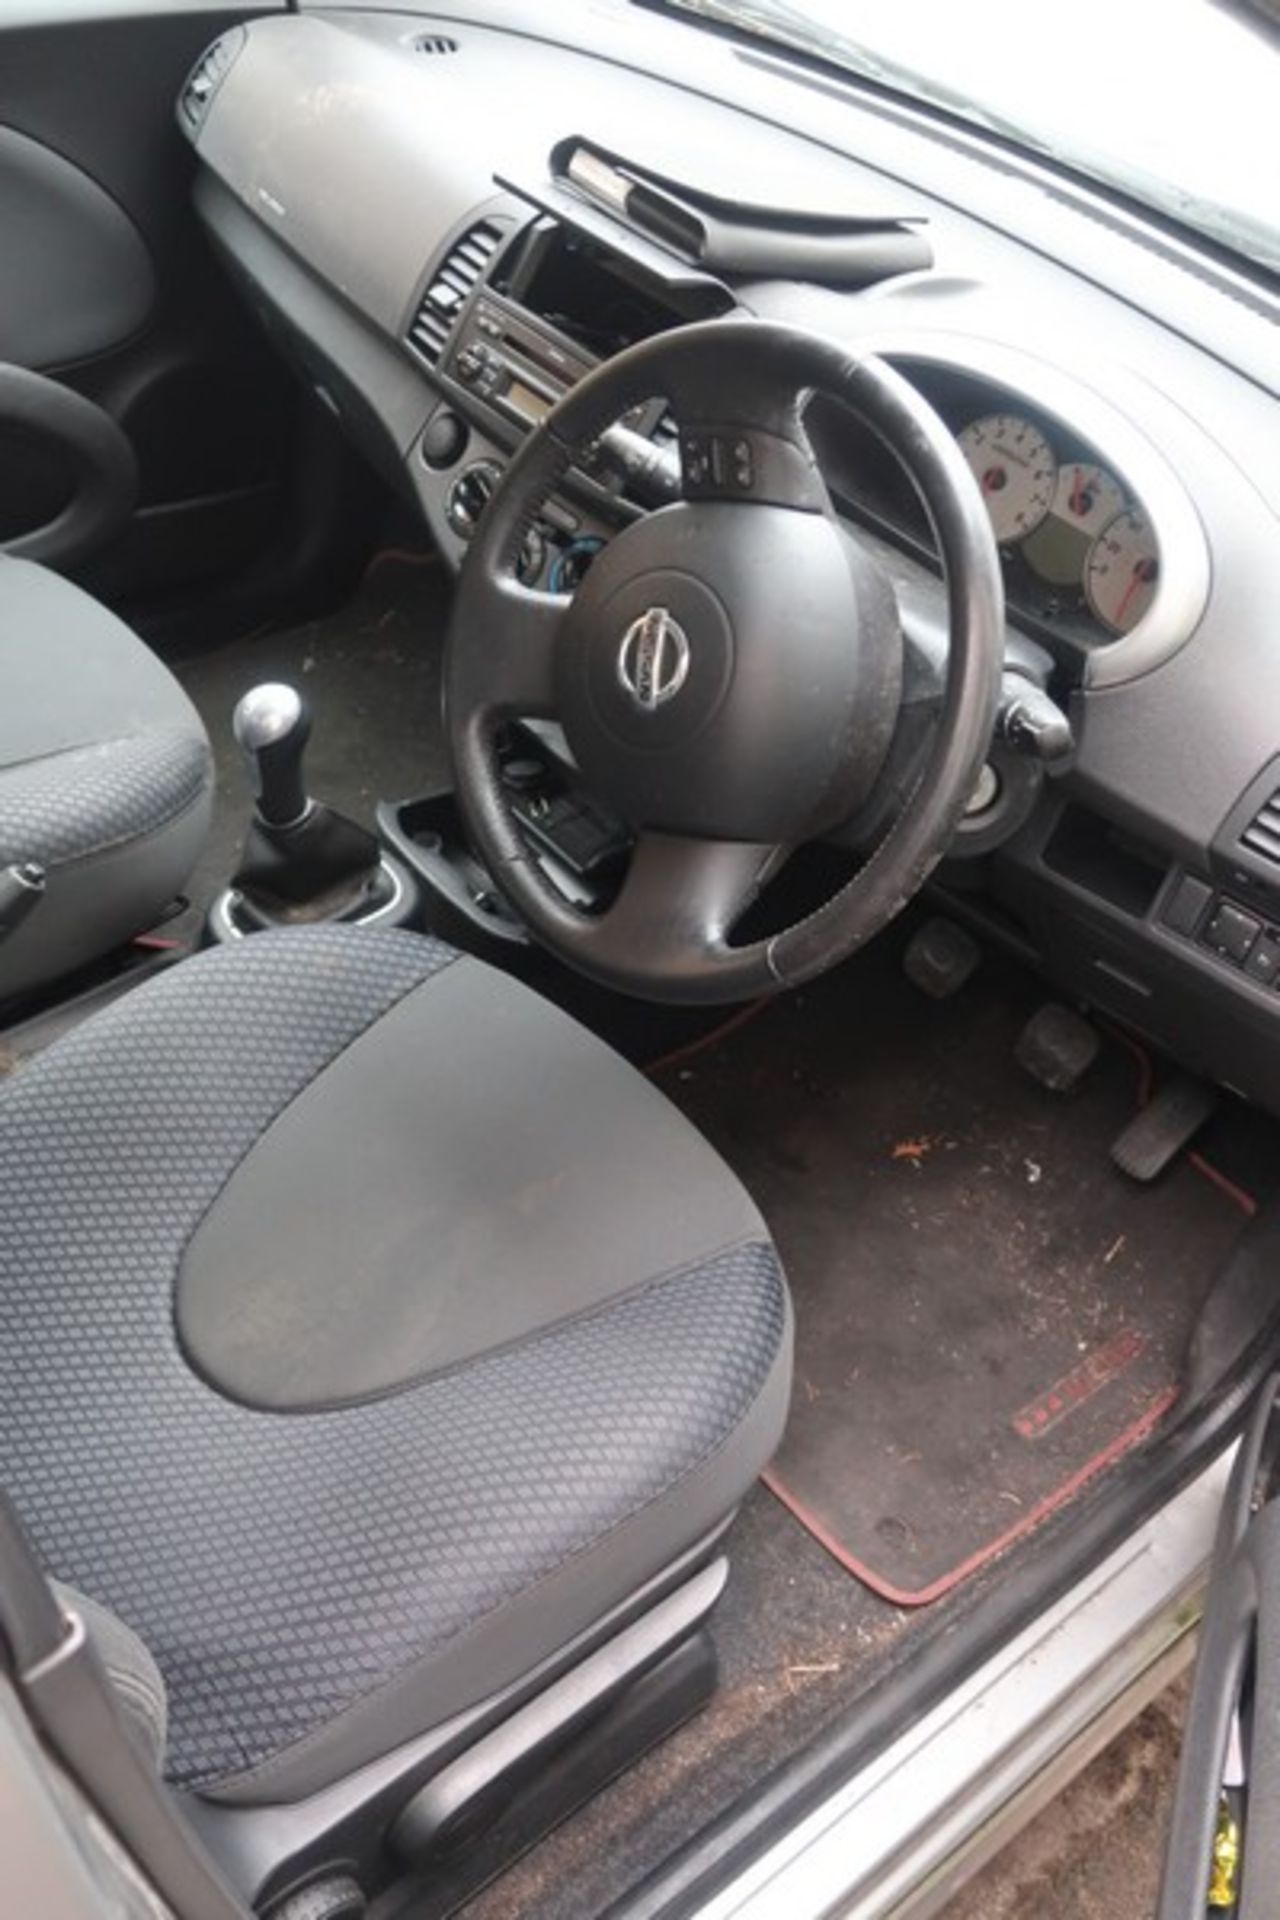 A 2007 Nissan Micra Activ five door hatchback, registration number WU07 MUC, 1240cc, petrol, manual, - Image 7 of 9